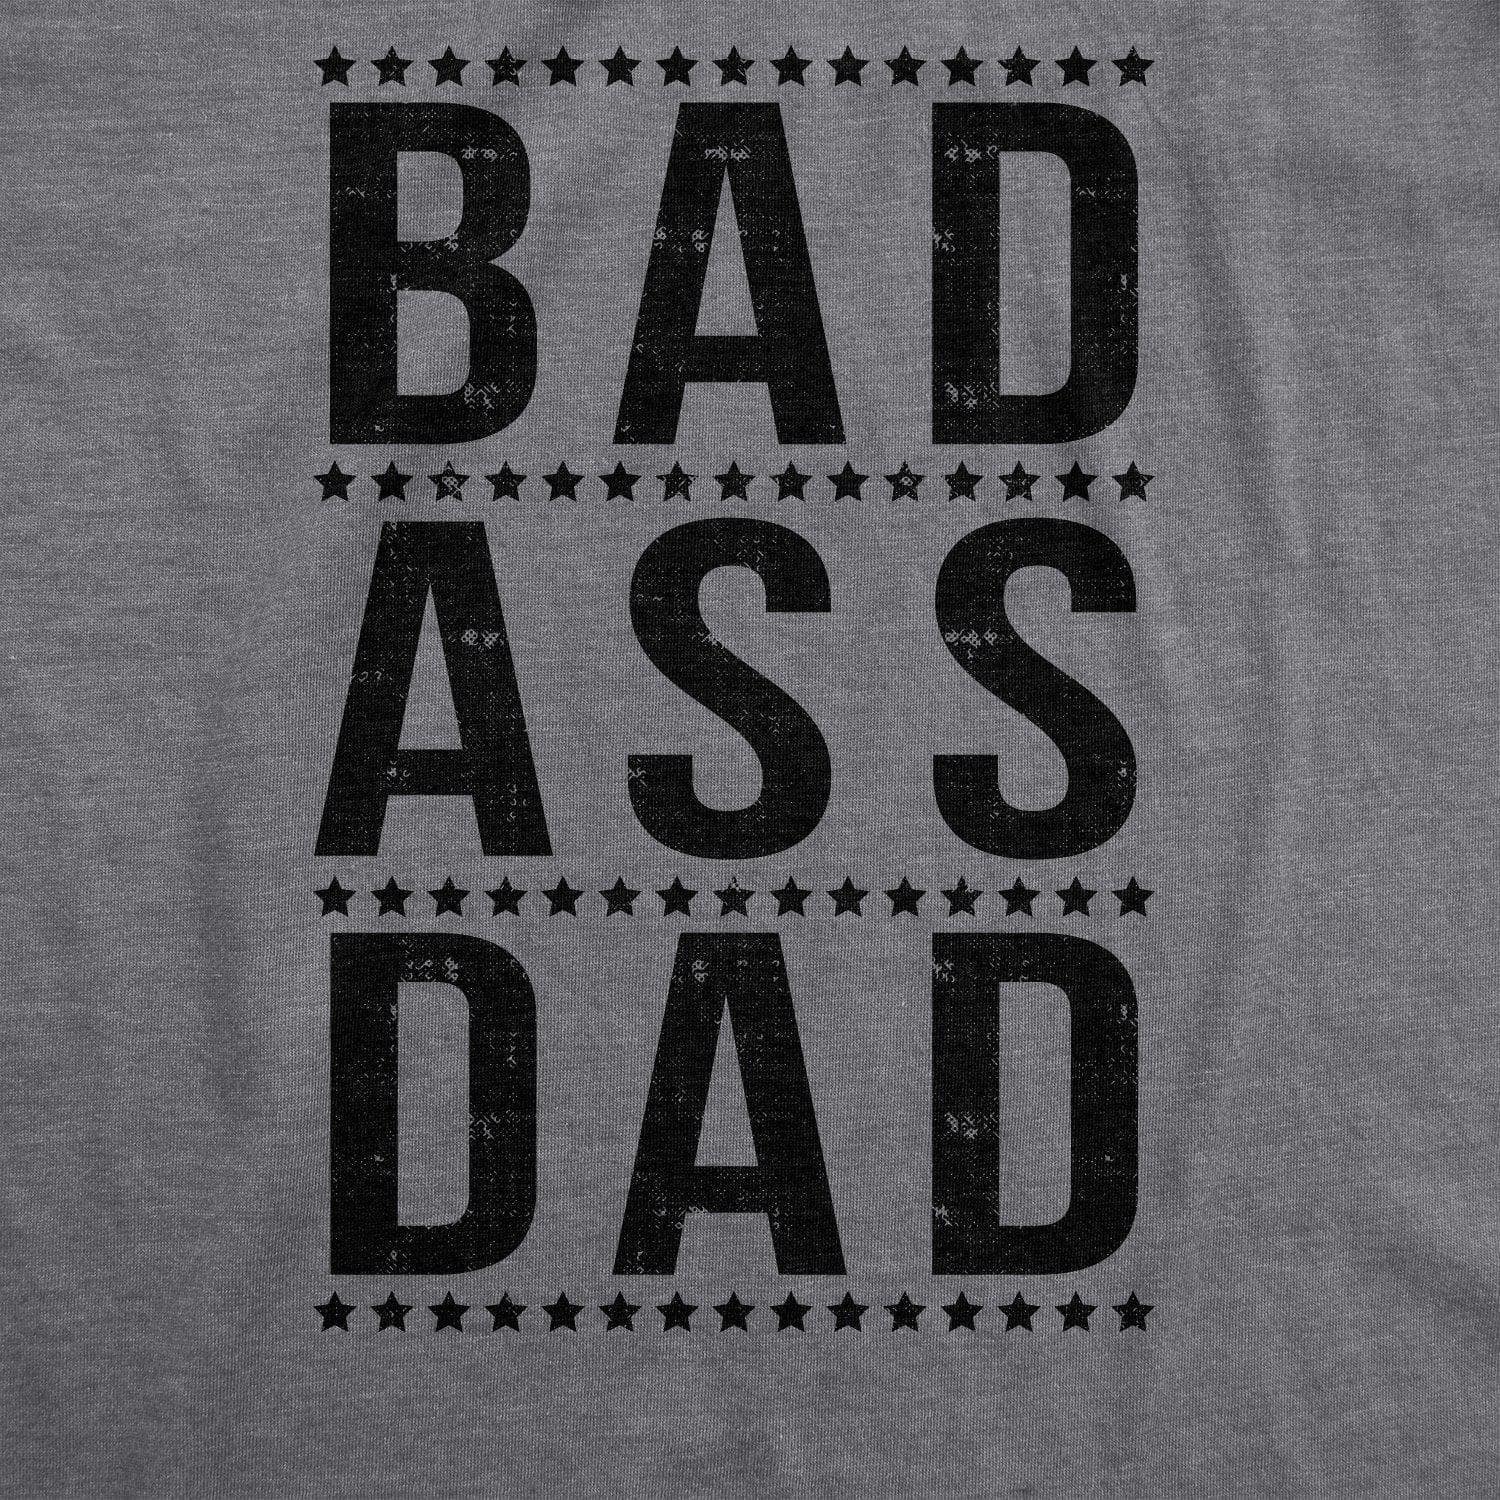 Bad A Dad Men's Tshirt  -  Crazy Dog T-Shirts